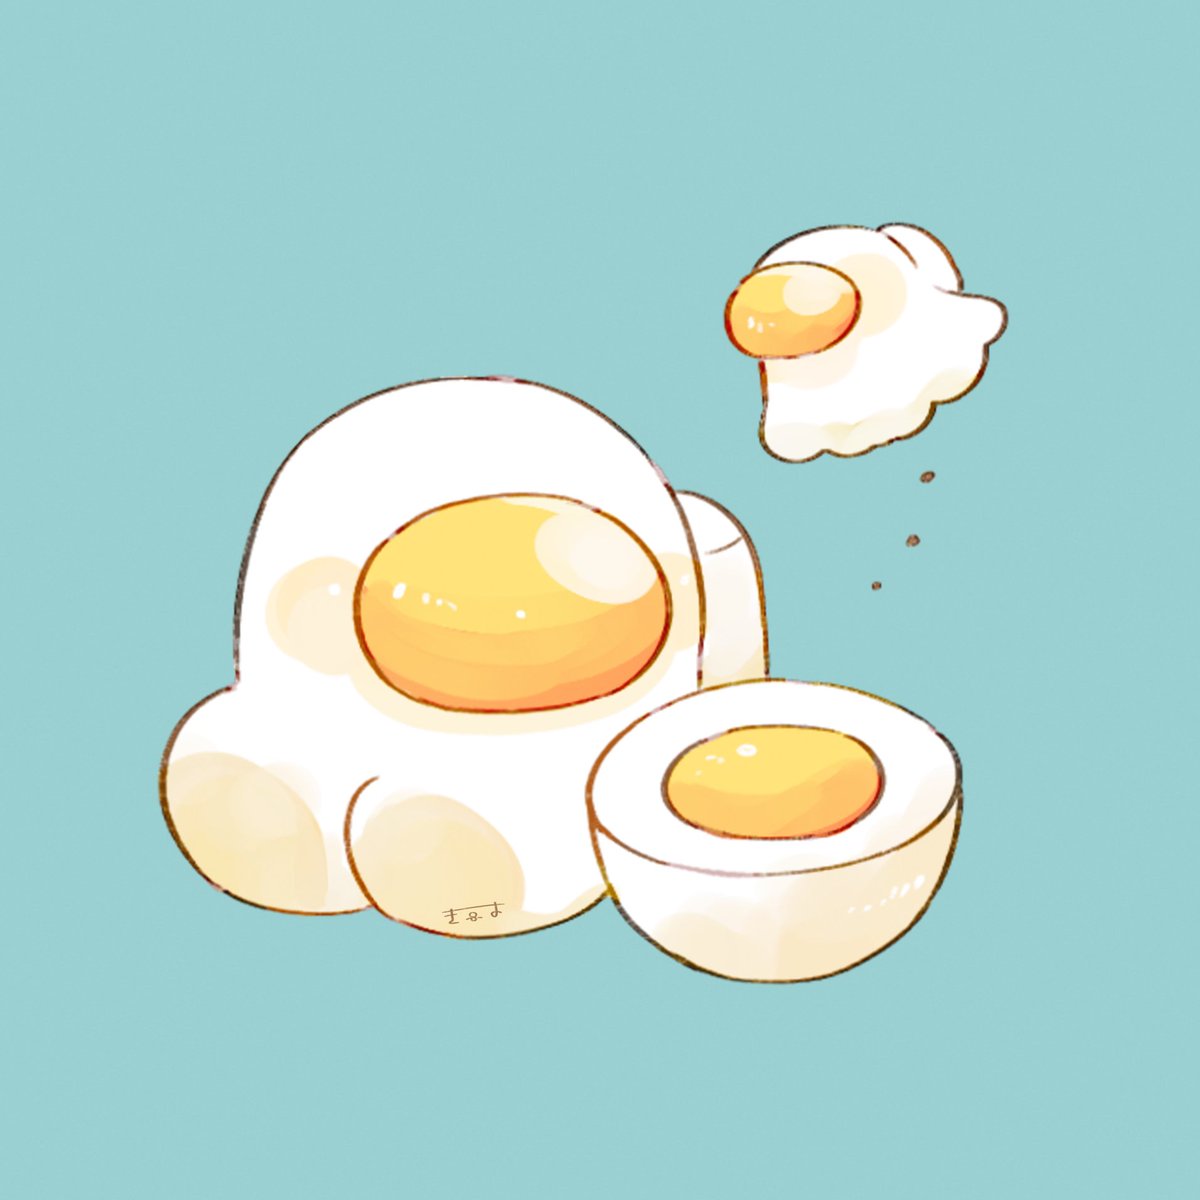 crewmate (among us) egg (food) no humans fried egg food simple background blue background egg  illustration images